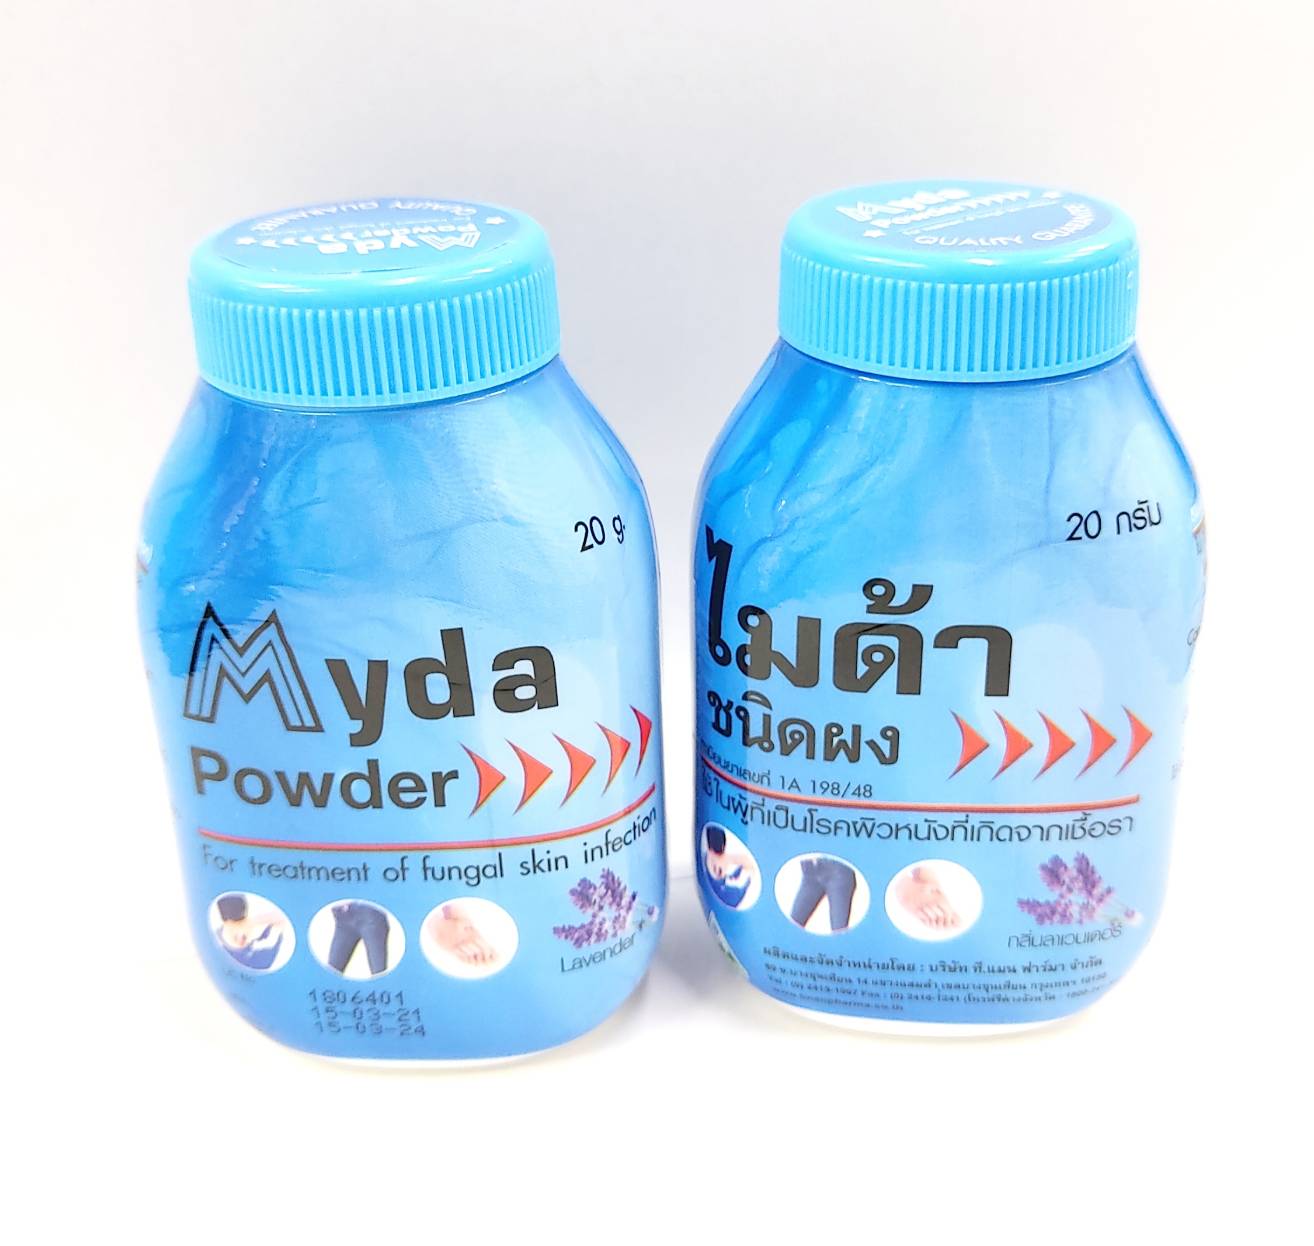 Myda powder ไมด้าชนิดผง  ขนาด 20 กรัม แพค 2 ขวด  จัดส่งโดยkerryรับประกัน100%